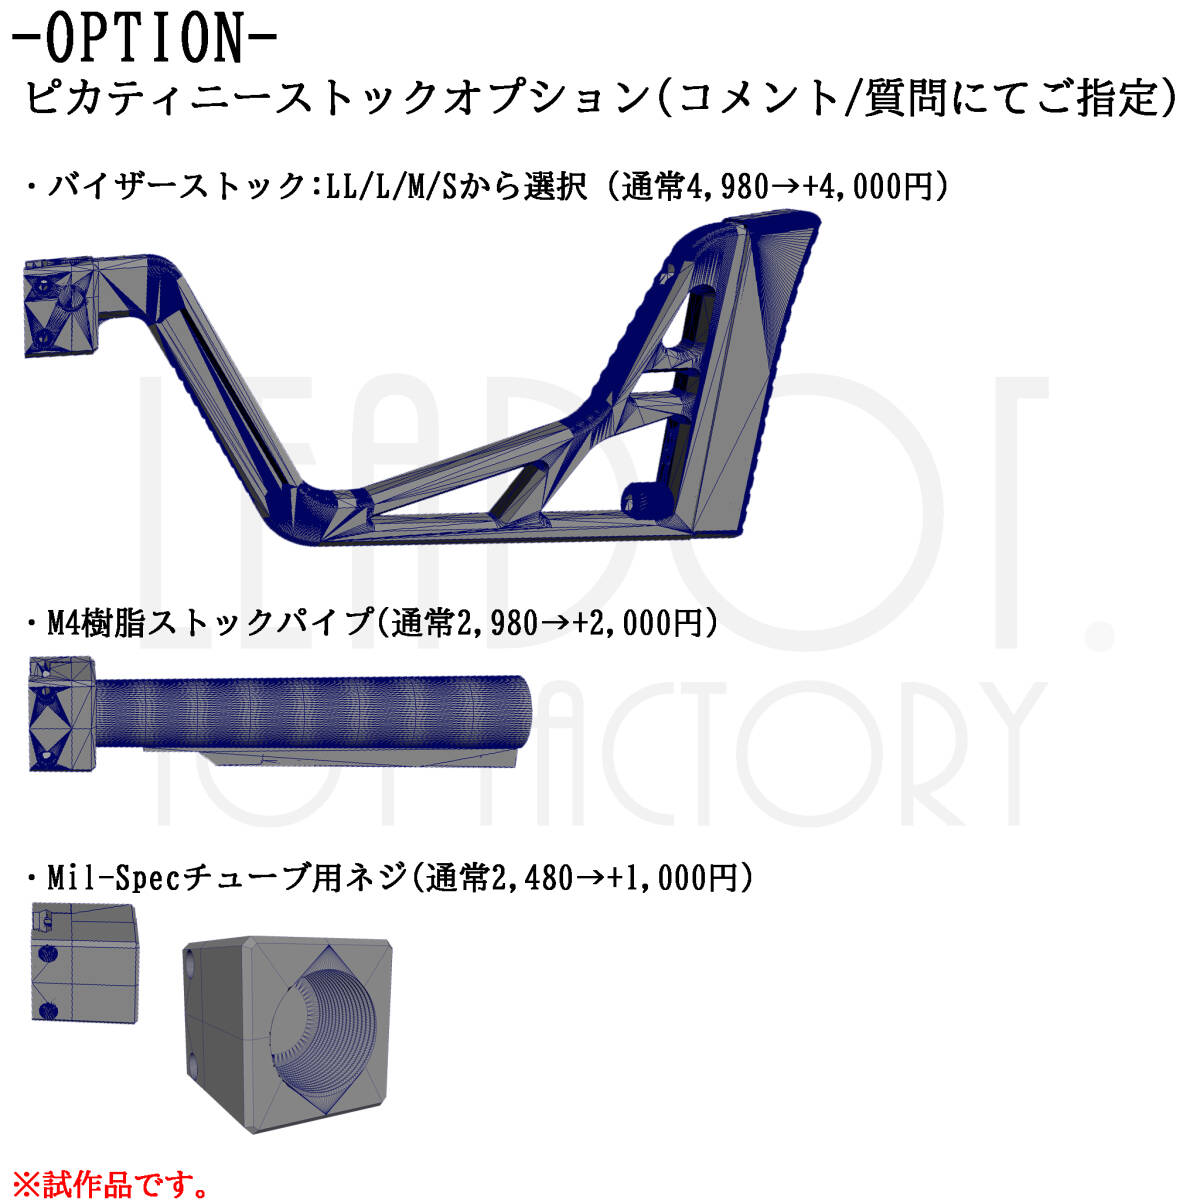 東京マルイ ソーコム Mk23 カービン コンバージョンキット Mk-II（M4樹脂パイプセット）_画像2